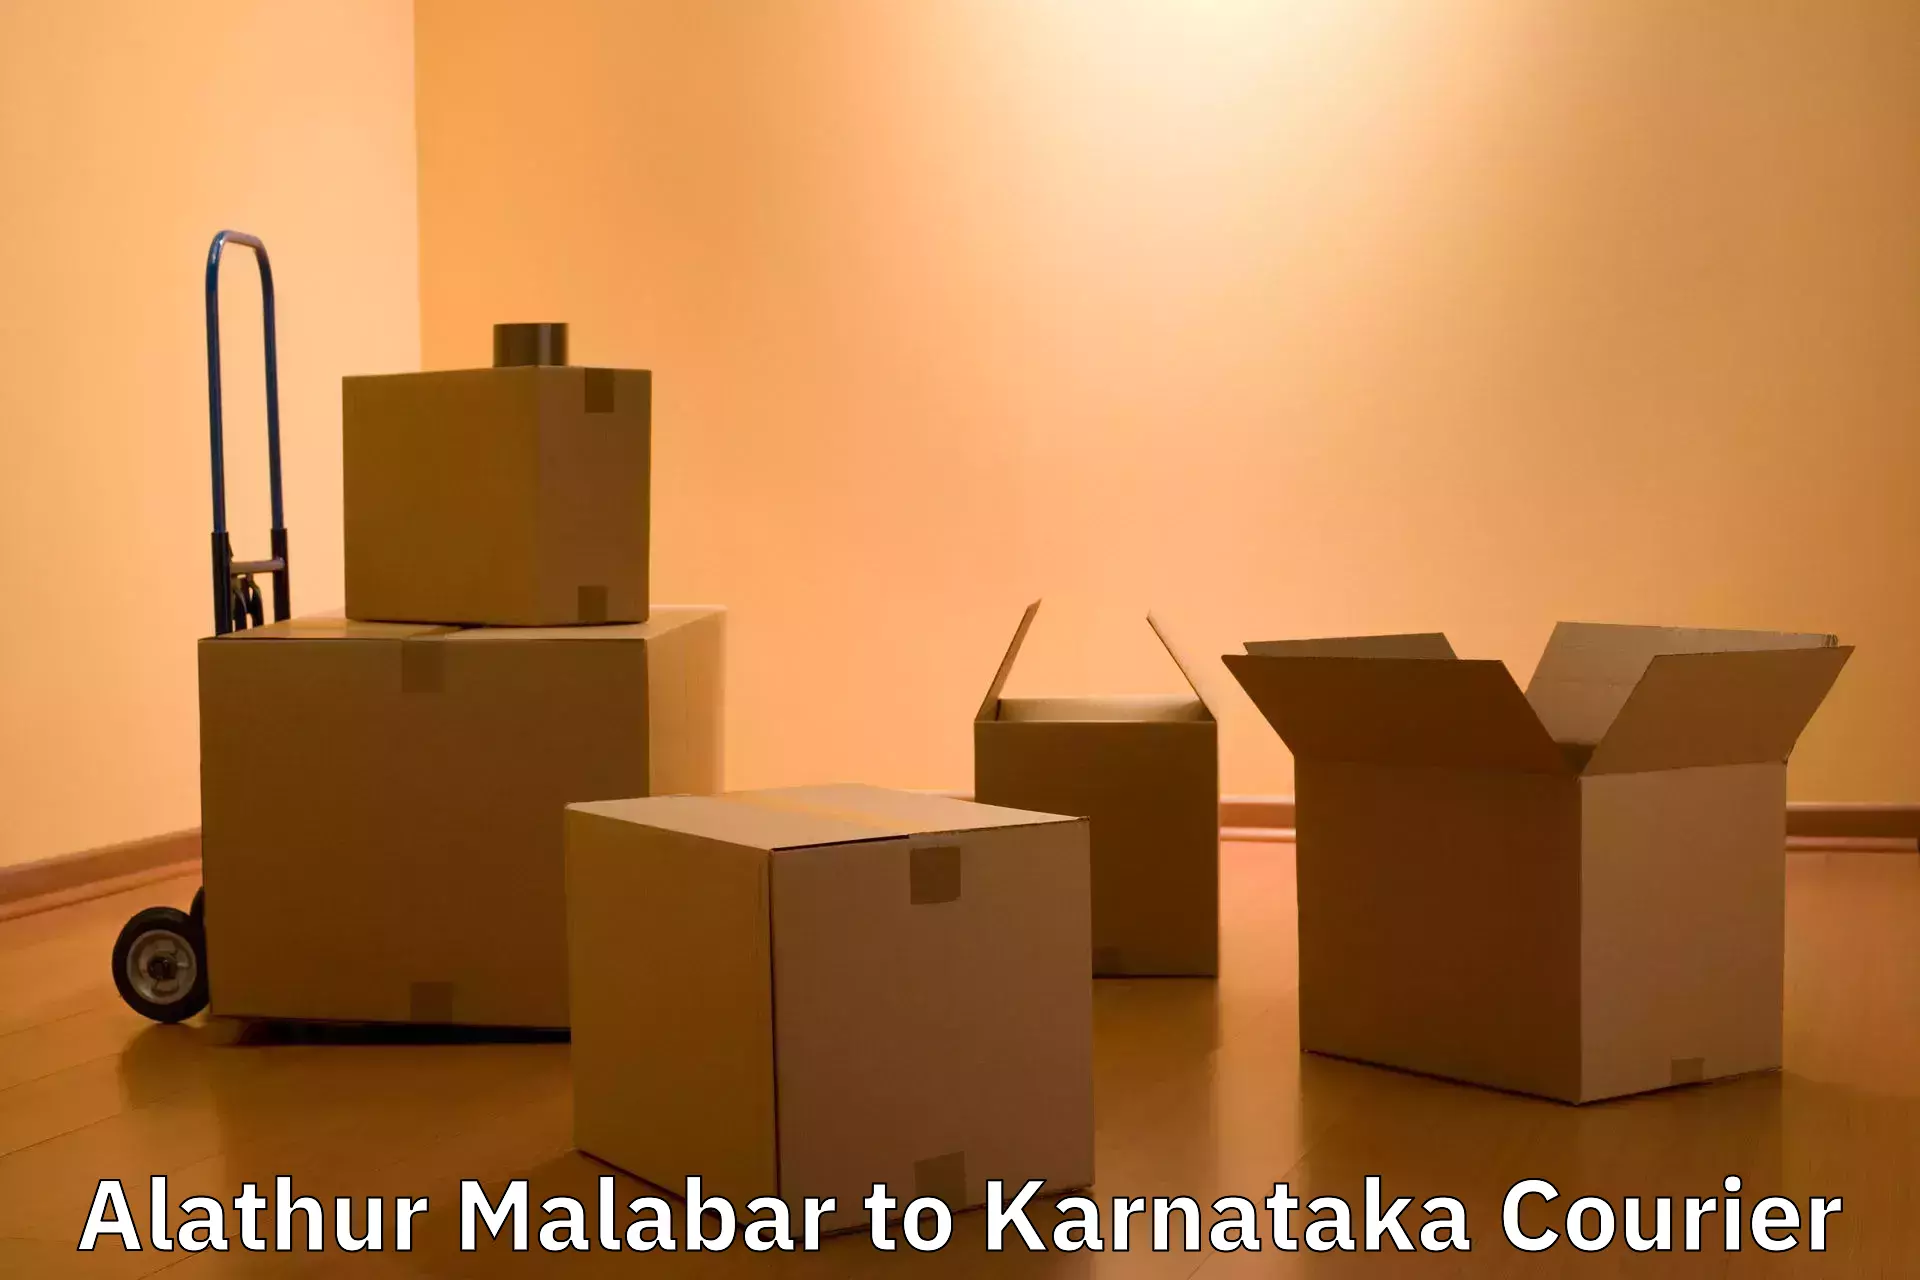 Luggage dispatch service Alathur Malabar to Karnataka